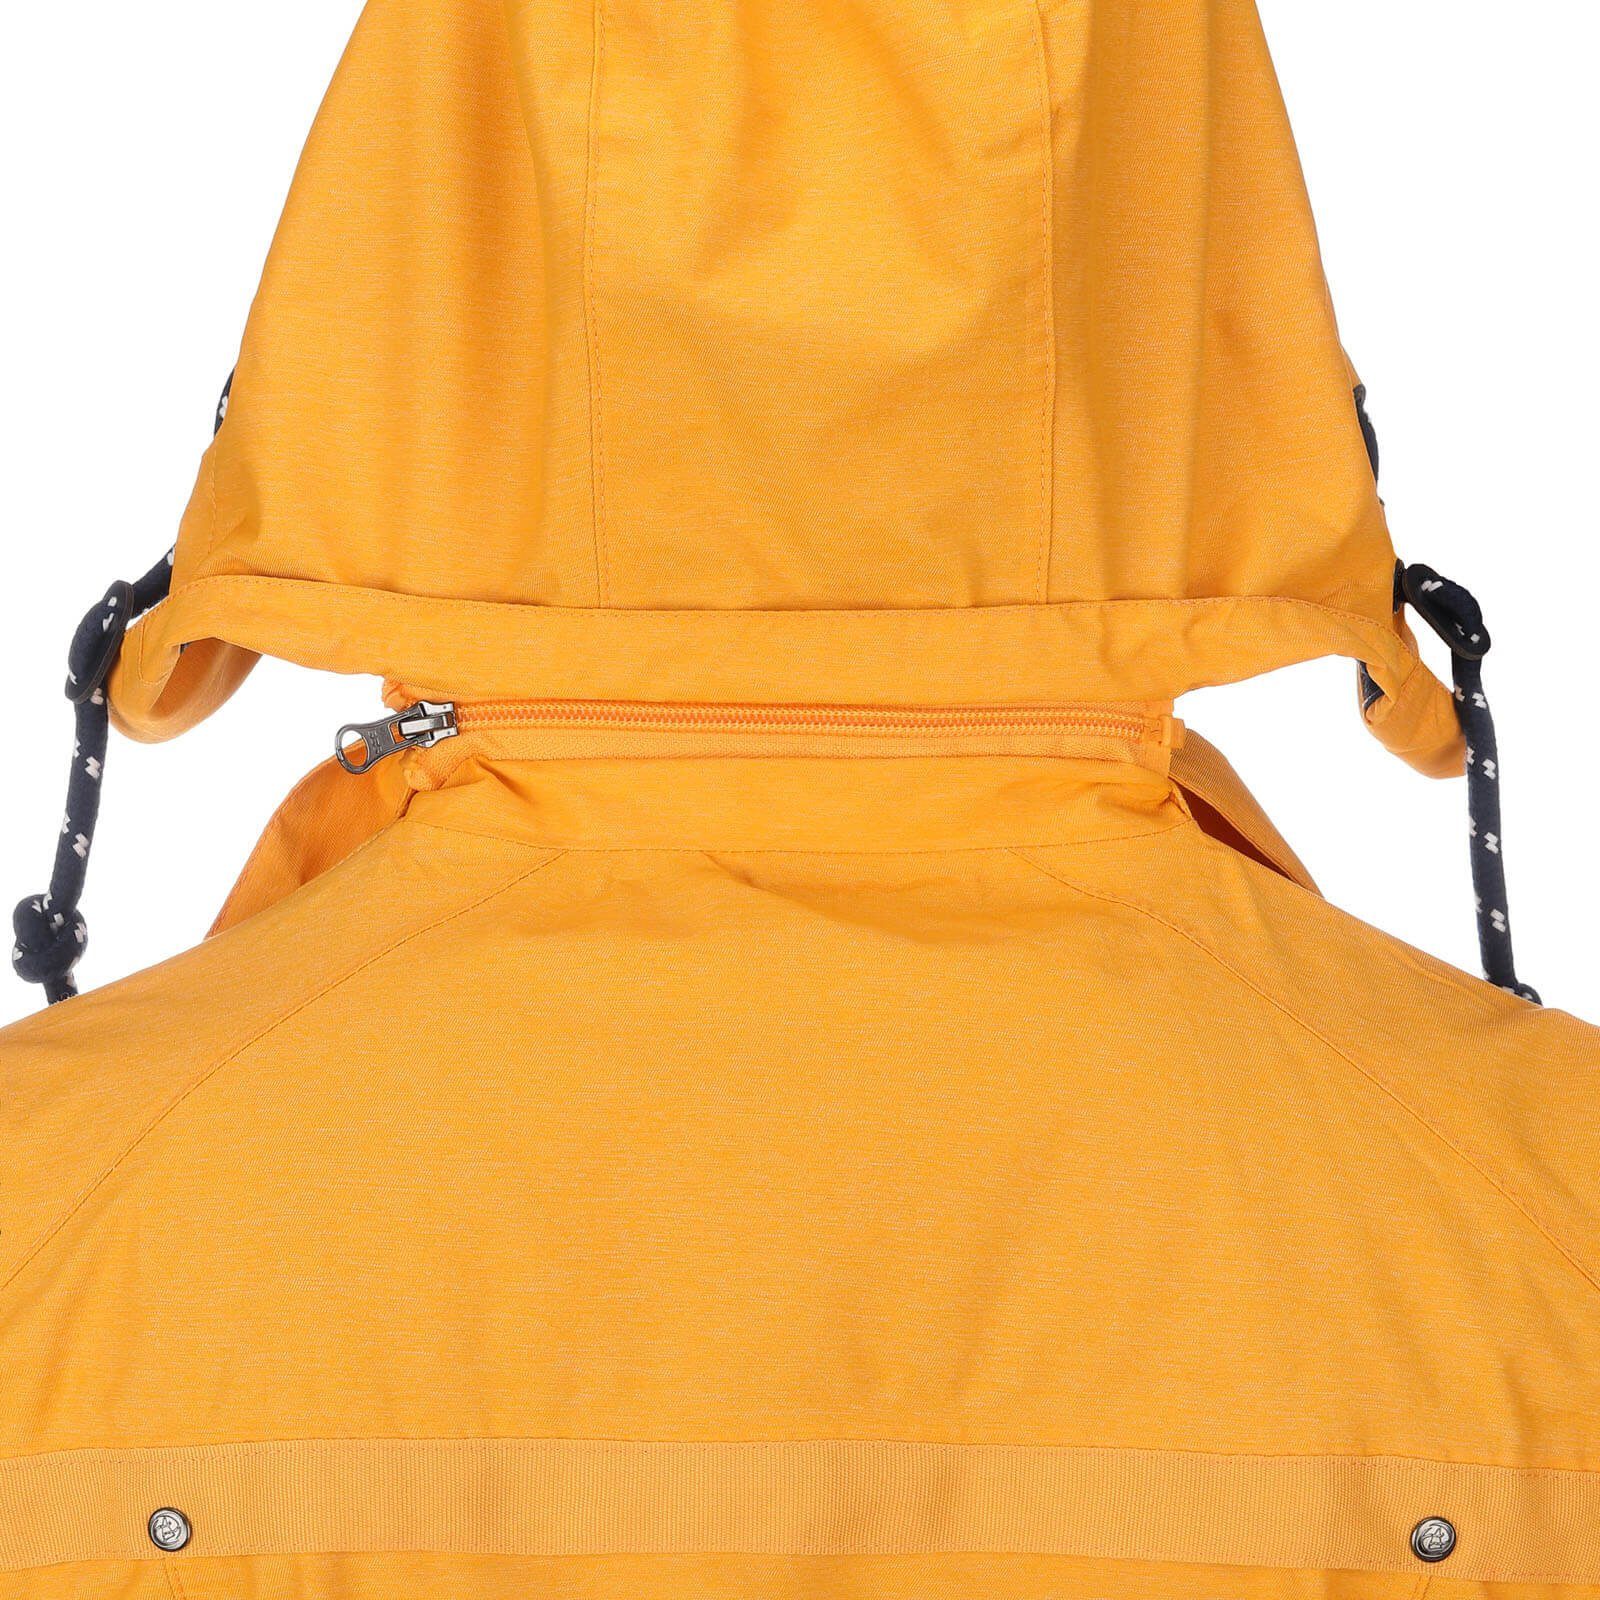 Regenjacke Dry Fashion wasserdicht Funktionsjacke Regen-Mantel gelb - Funktionsmantel melange Damen Bansin